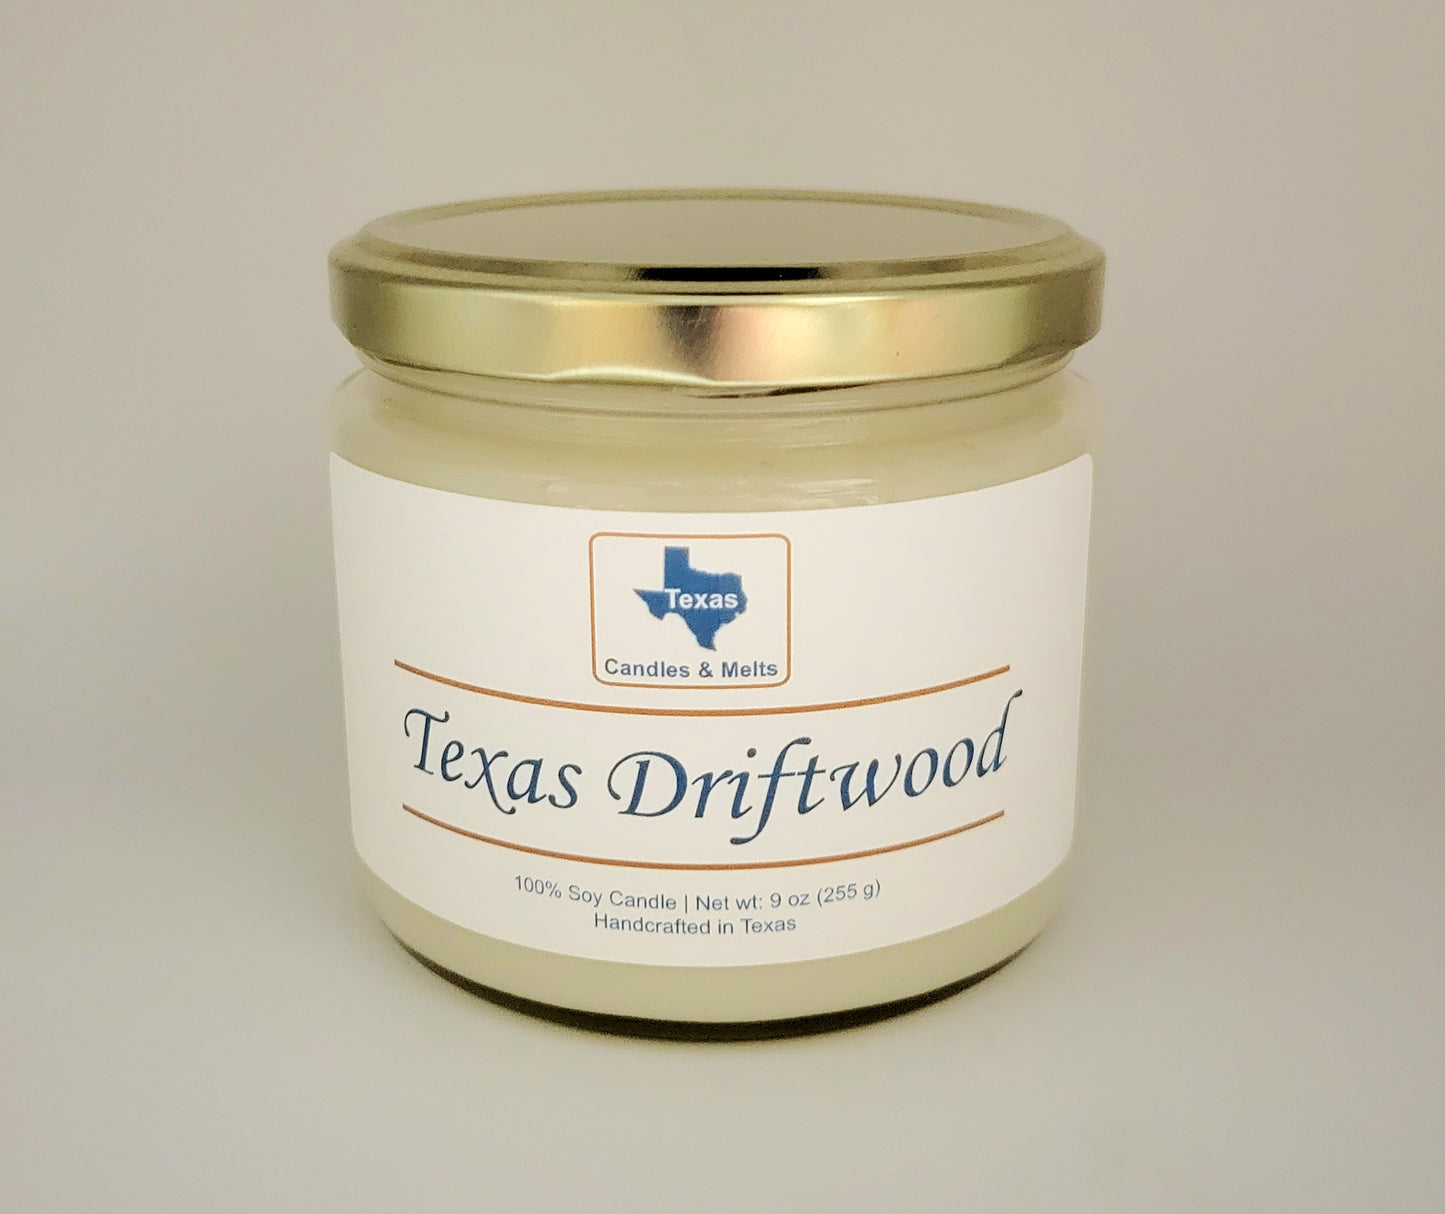 Texas Driftwood